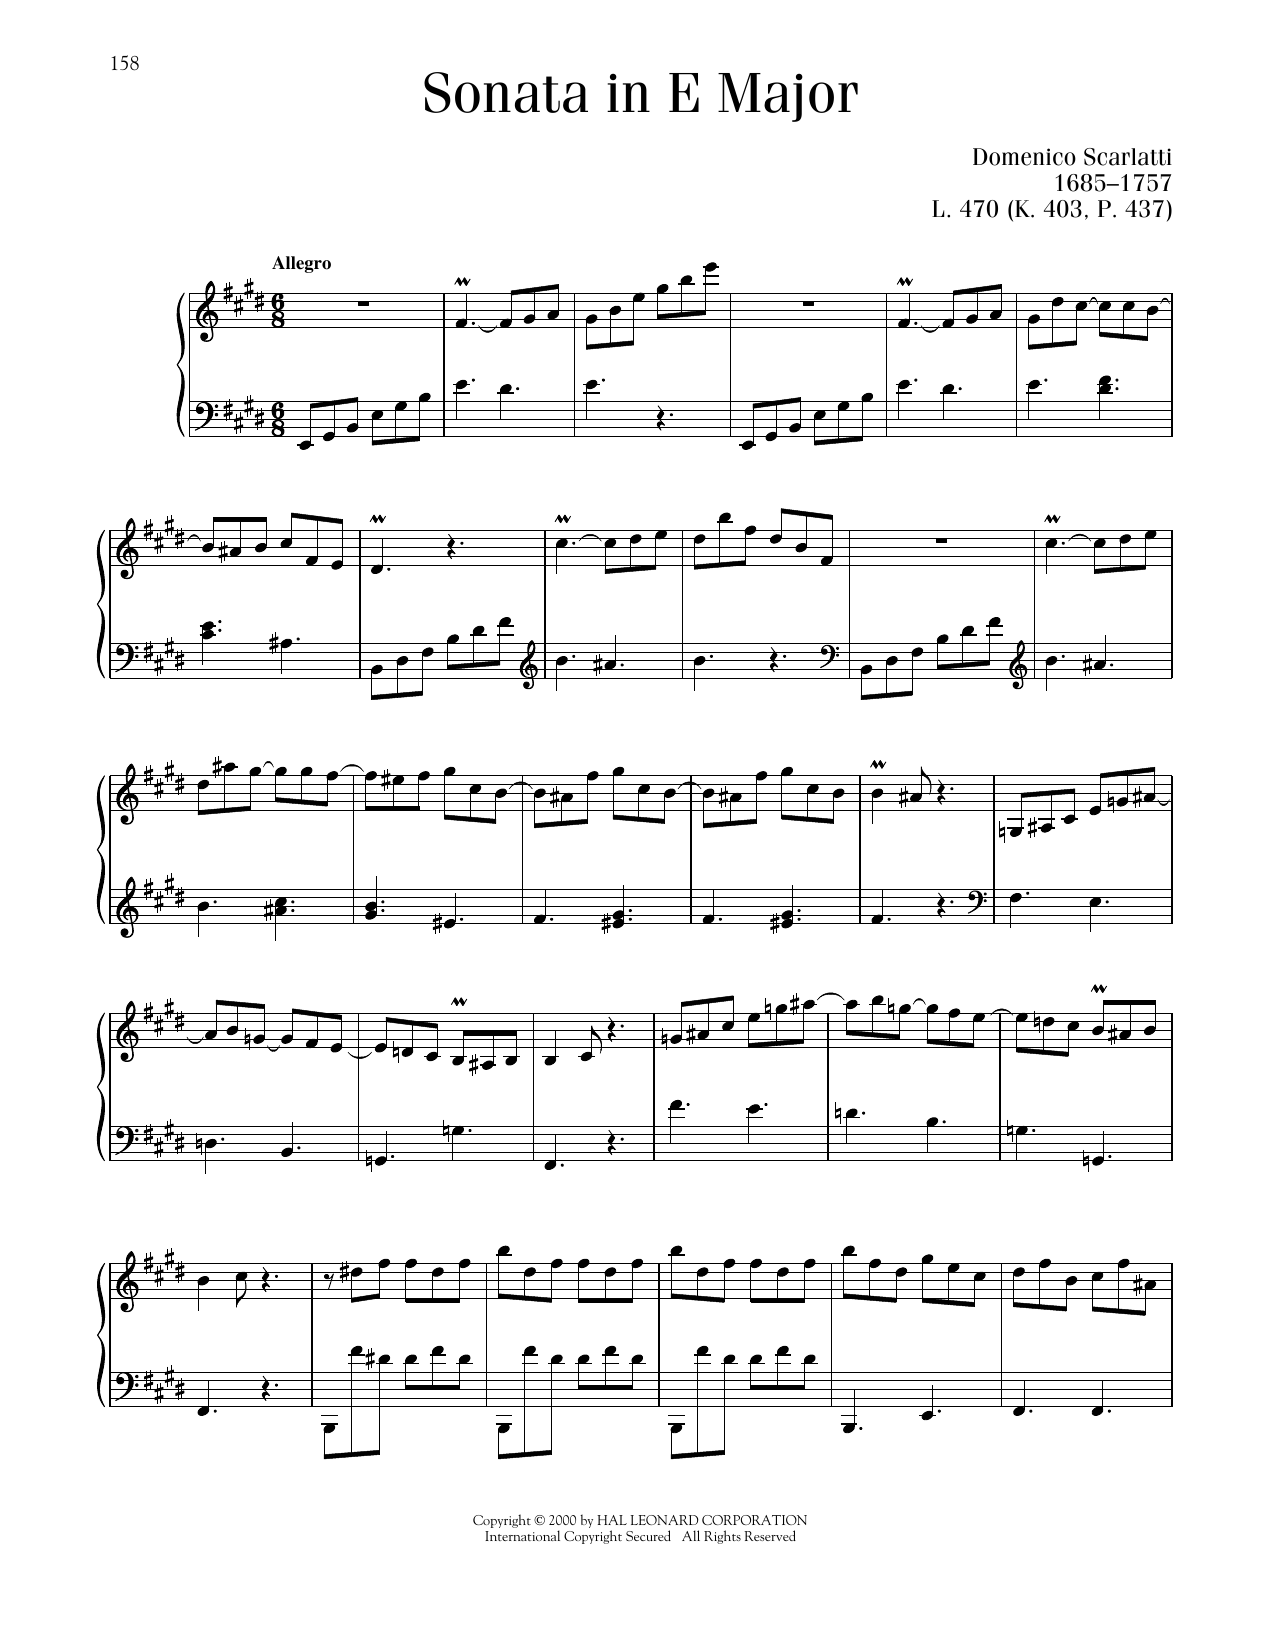 Domenico Scarlatti Sonata In E Major, K. 403 sheet music notes and chords arranged for Piano Solo